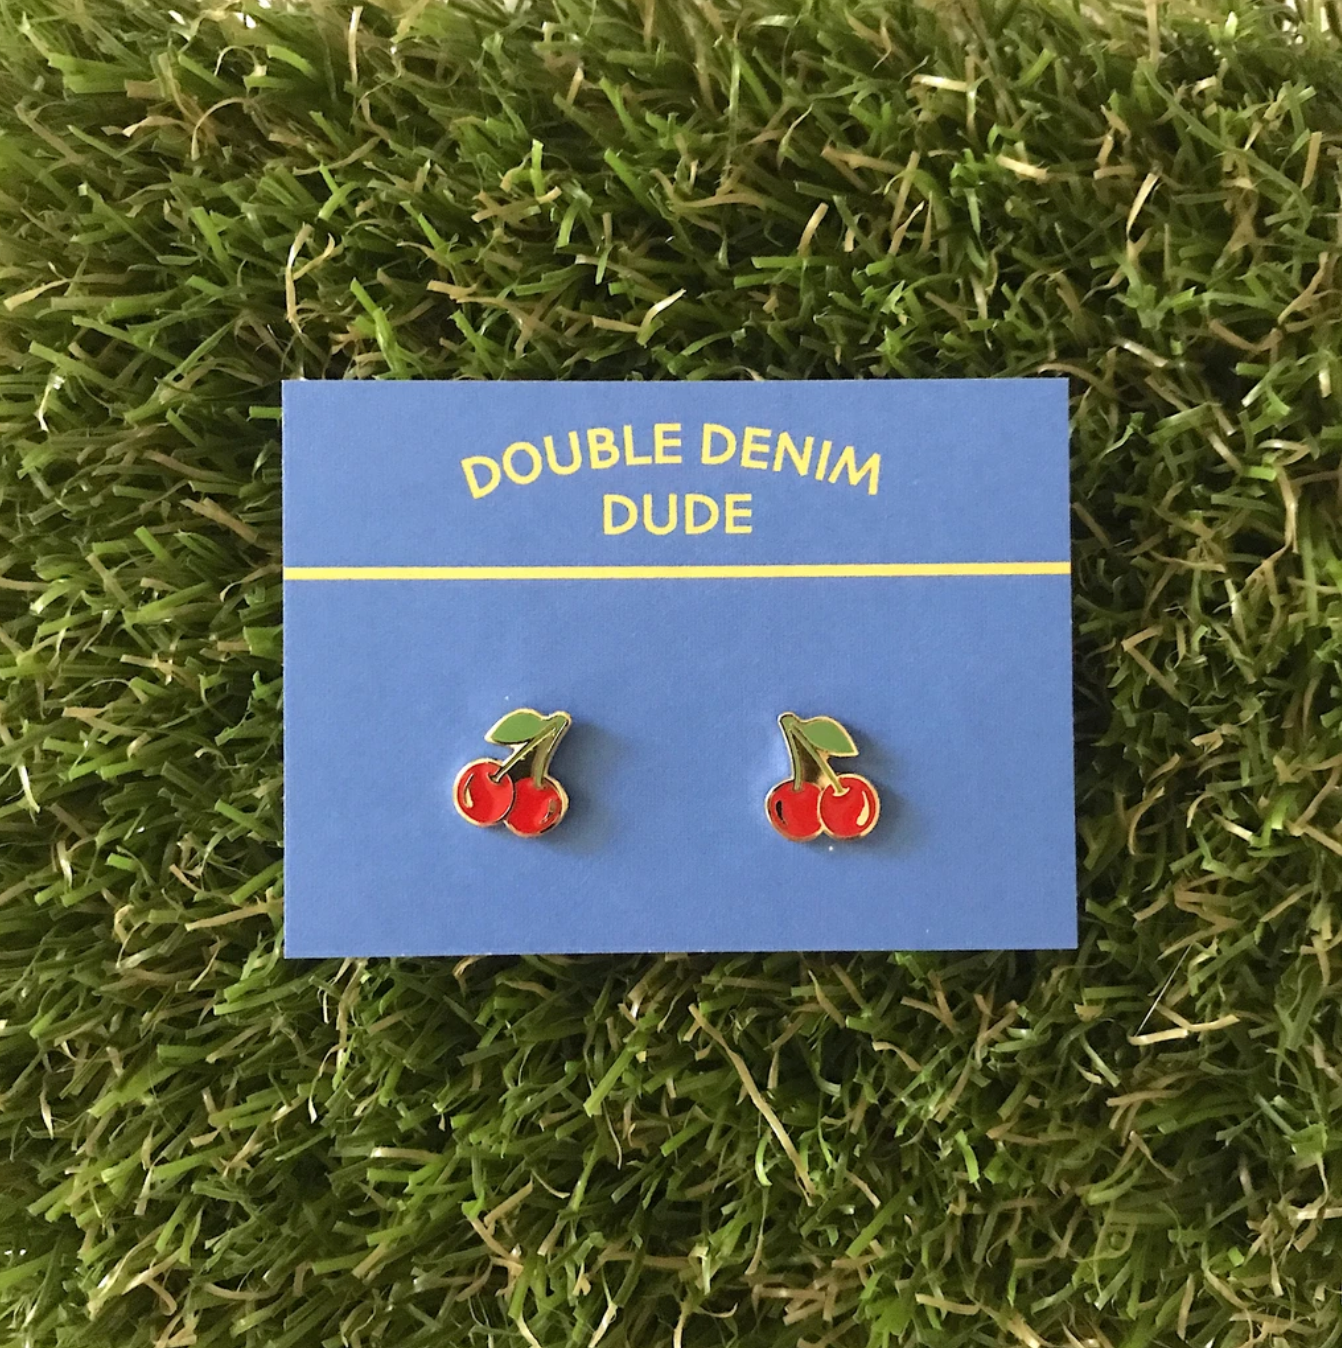 Double Denim Dude: Earrings